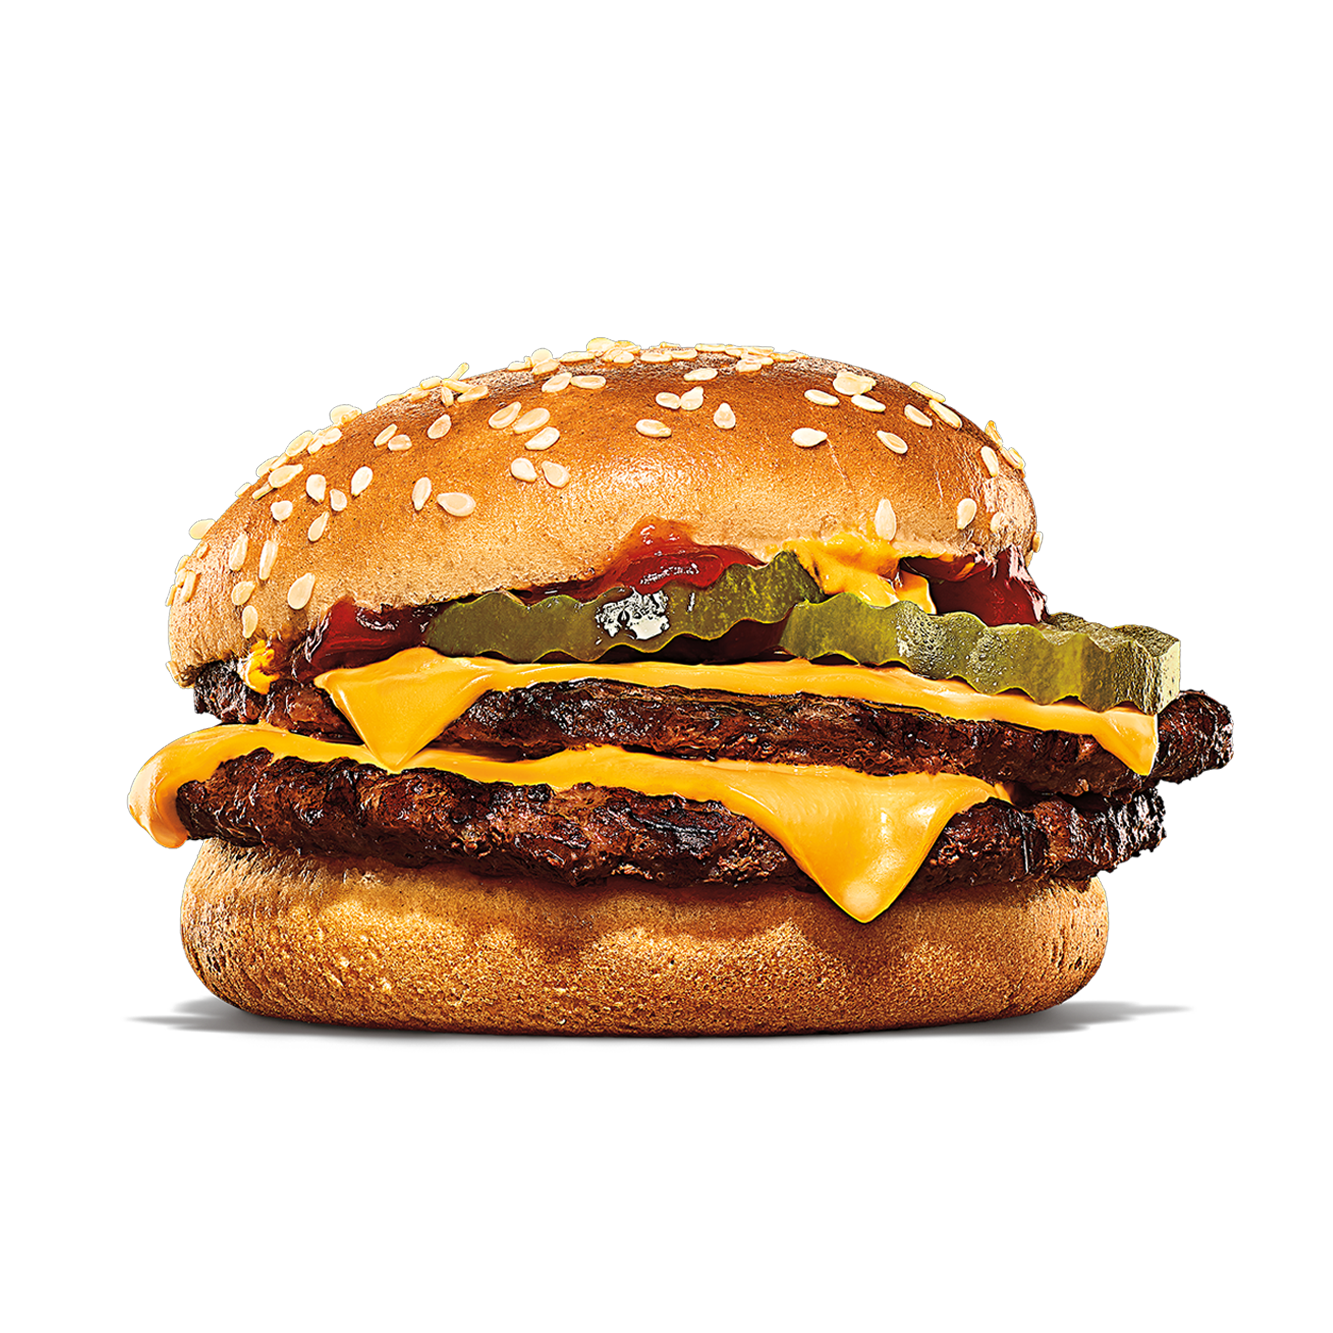 Burger King Monroe (734)242-6120